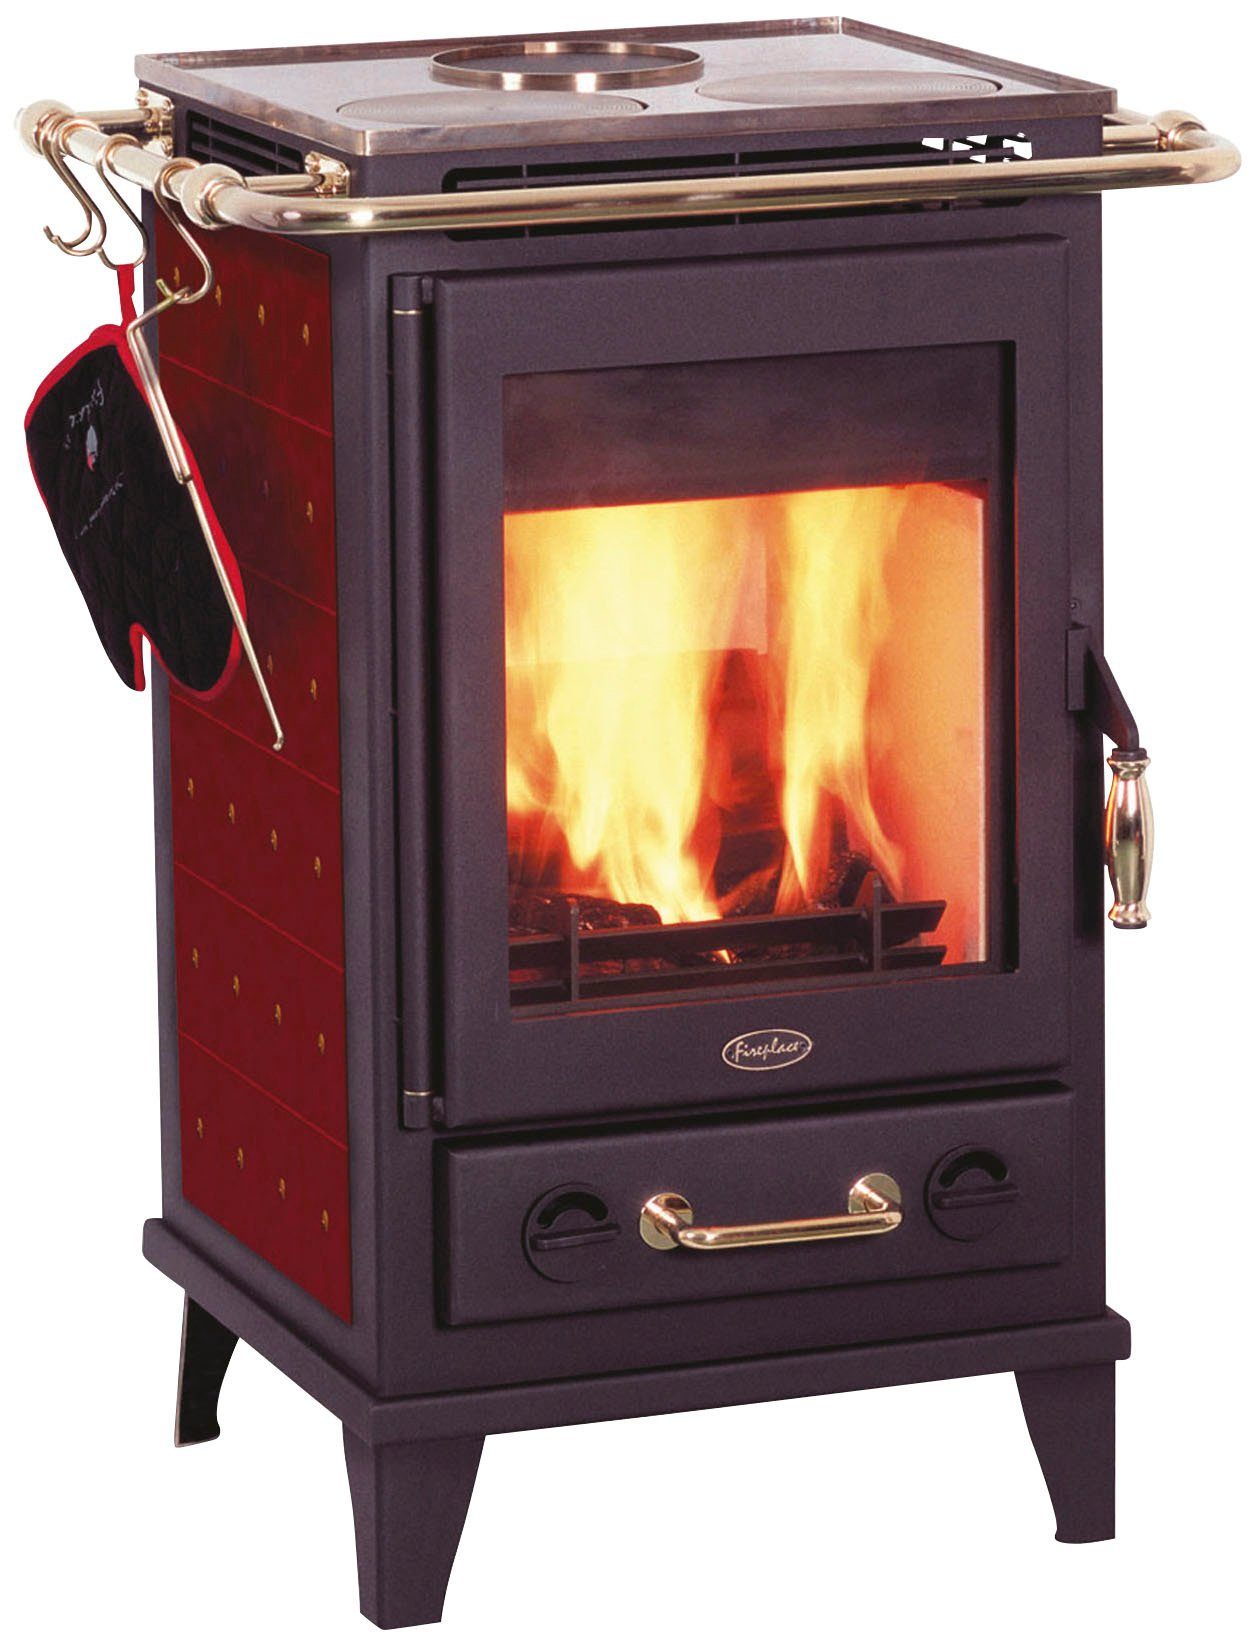 Fireplace Kaminofen Florenz Keramik, 7 kW, Zeitbrand, mit Kochplatten,  Seitenteile mit bordeux Keramikfliesen verkleidet | Kaminöfen